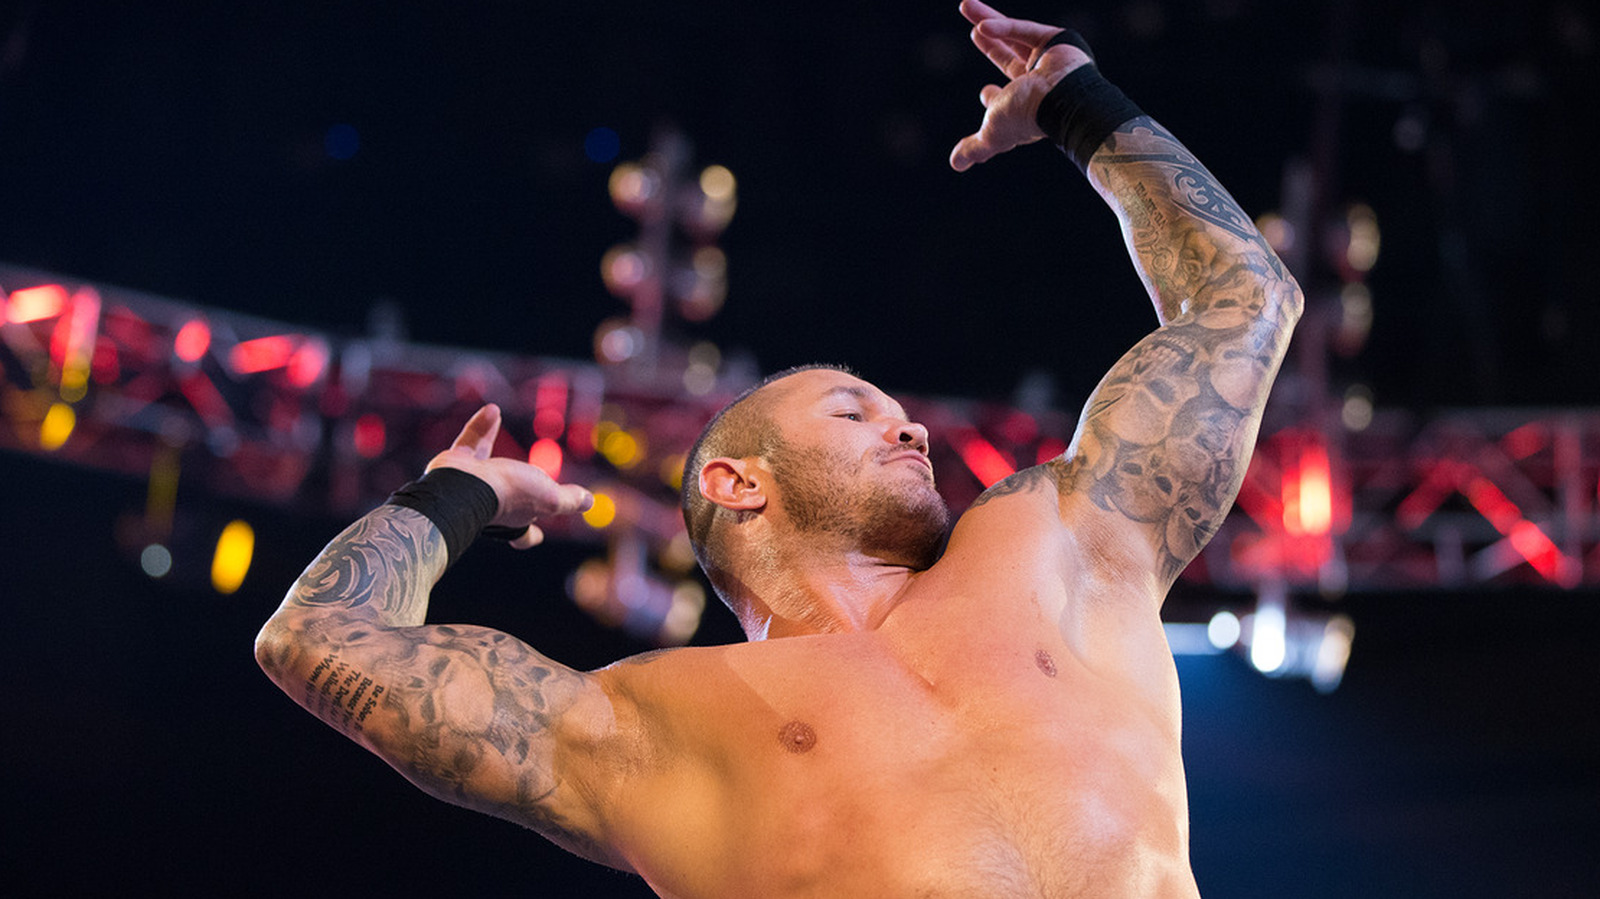 Randy Orton evalúa las perspectivas de Hollywood y el futuro de la WWE, 'segundo contrato de arrendamiento' en su carrera